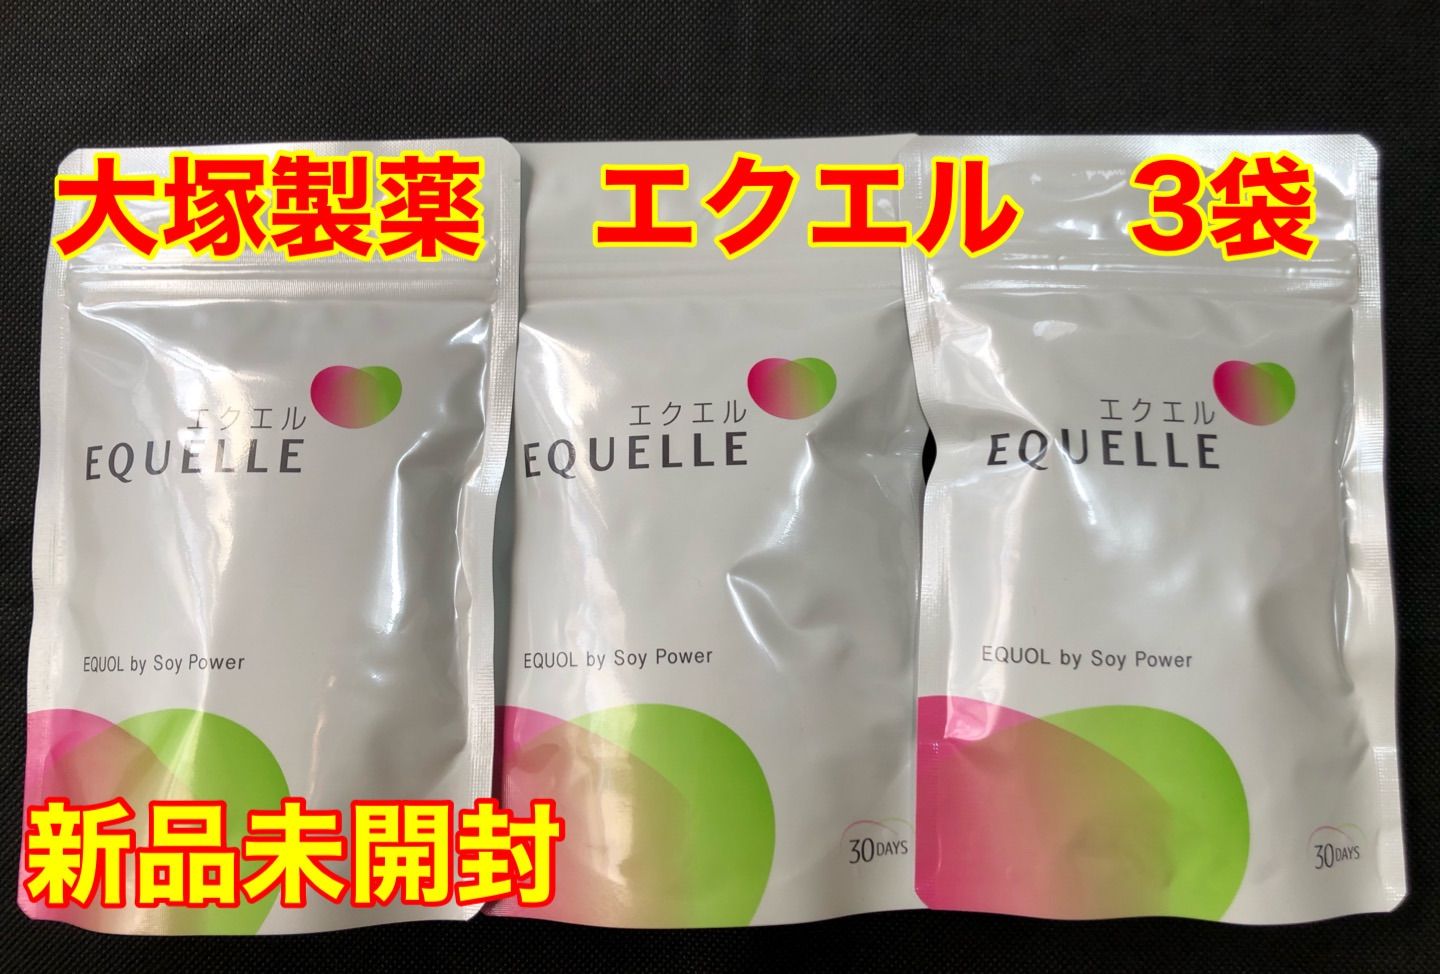 コスメ/美容エクエル 大塚製薬 3パック 3袋 - ダイエット食品